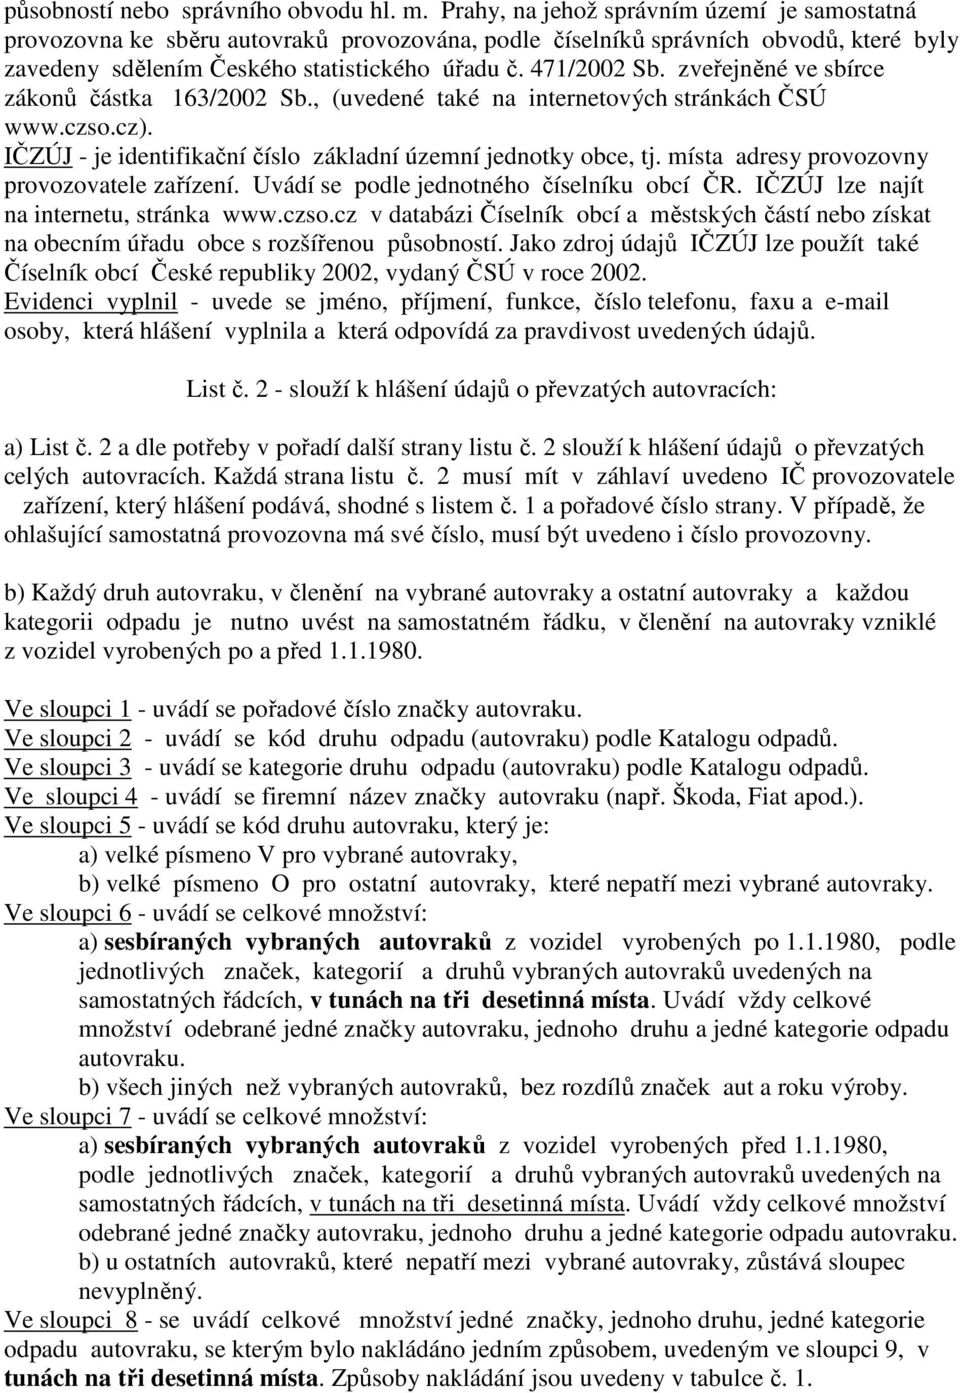 zveřejněné ve sbírce zákonů částka 163/2002 Sb., (uvedené také na internetových stránkách ČSÚ www.czso.cz). IČZÚJ - je identifikační číslo základní územní jednotky obce, tj.